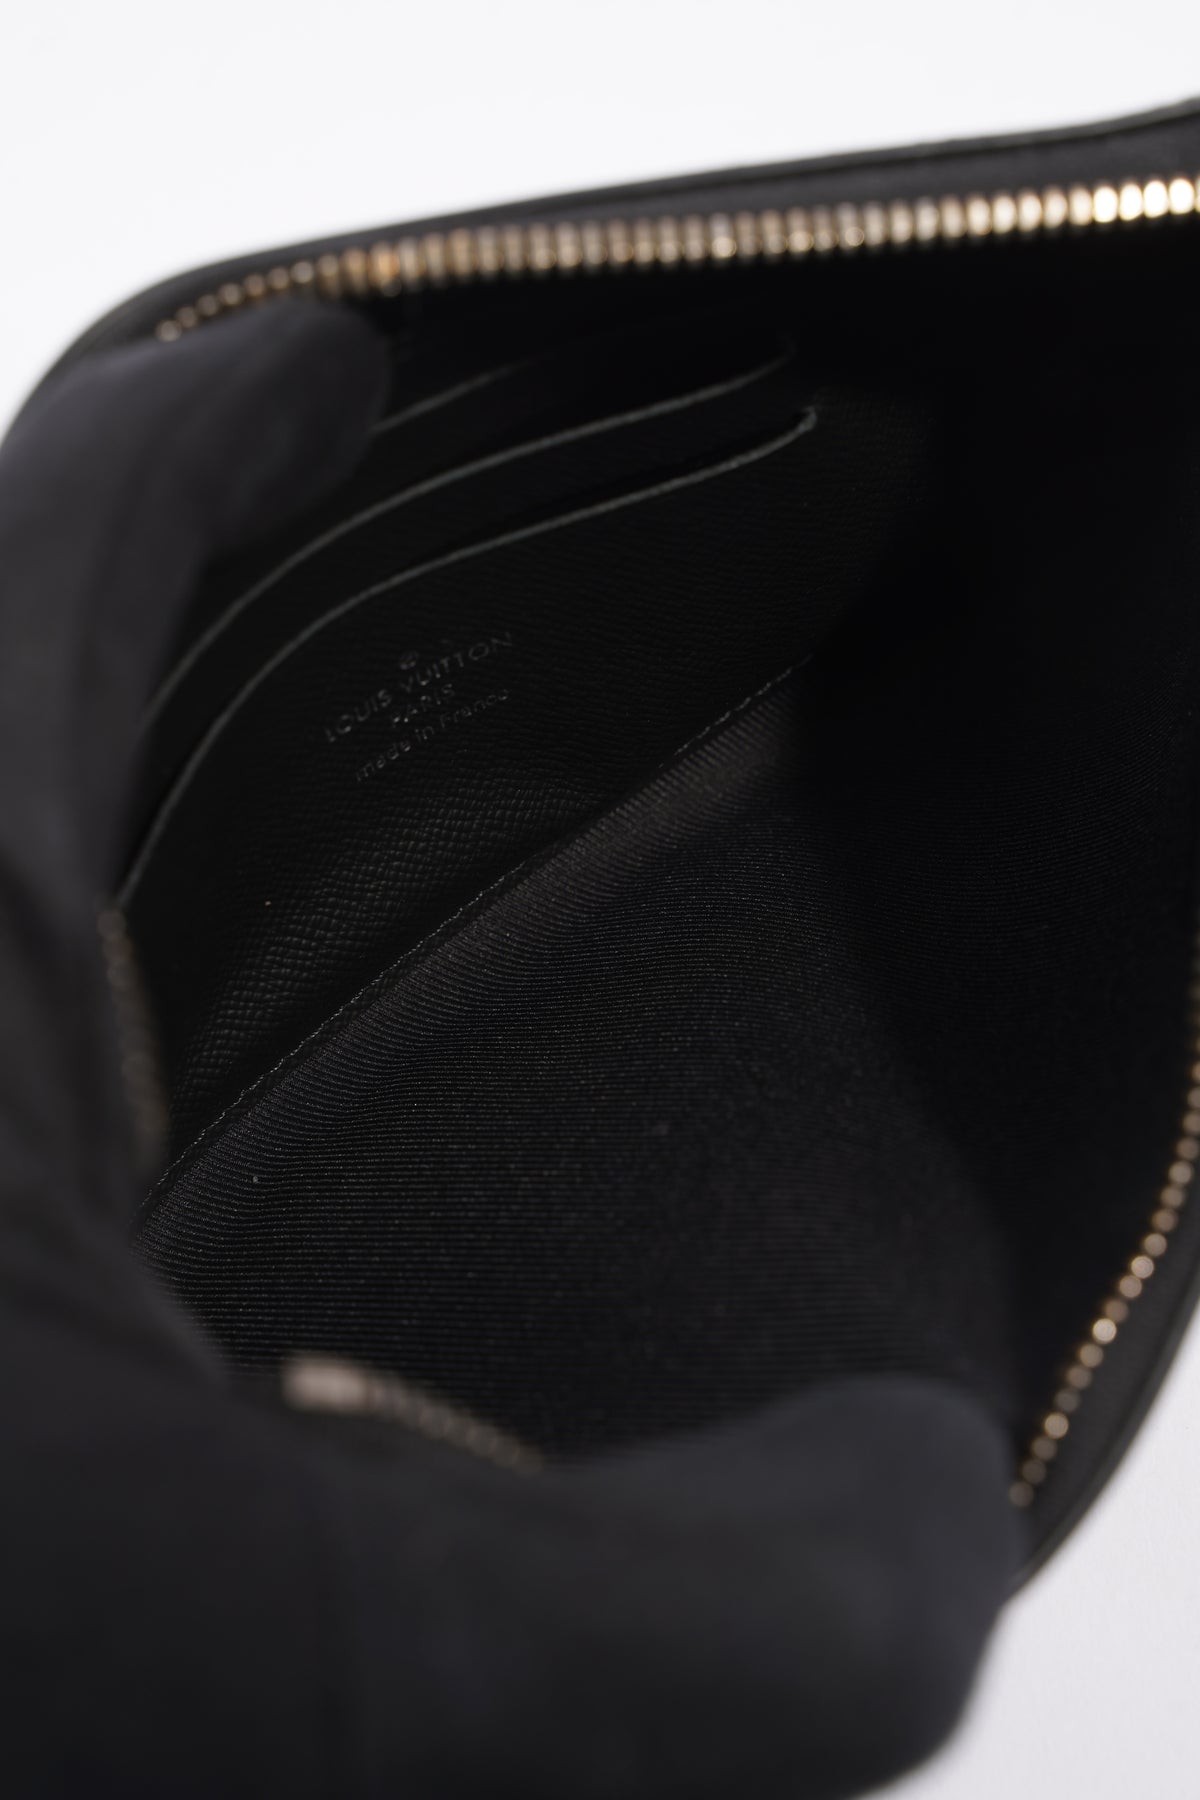 Black Louis Vuitton Monogram Eclipse Discovery Pochette GM Clutch Bag –  Designer Revival